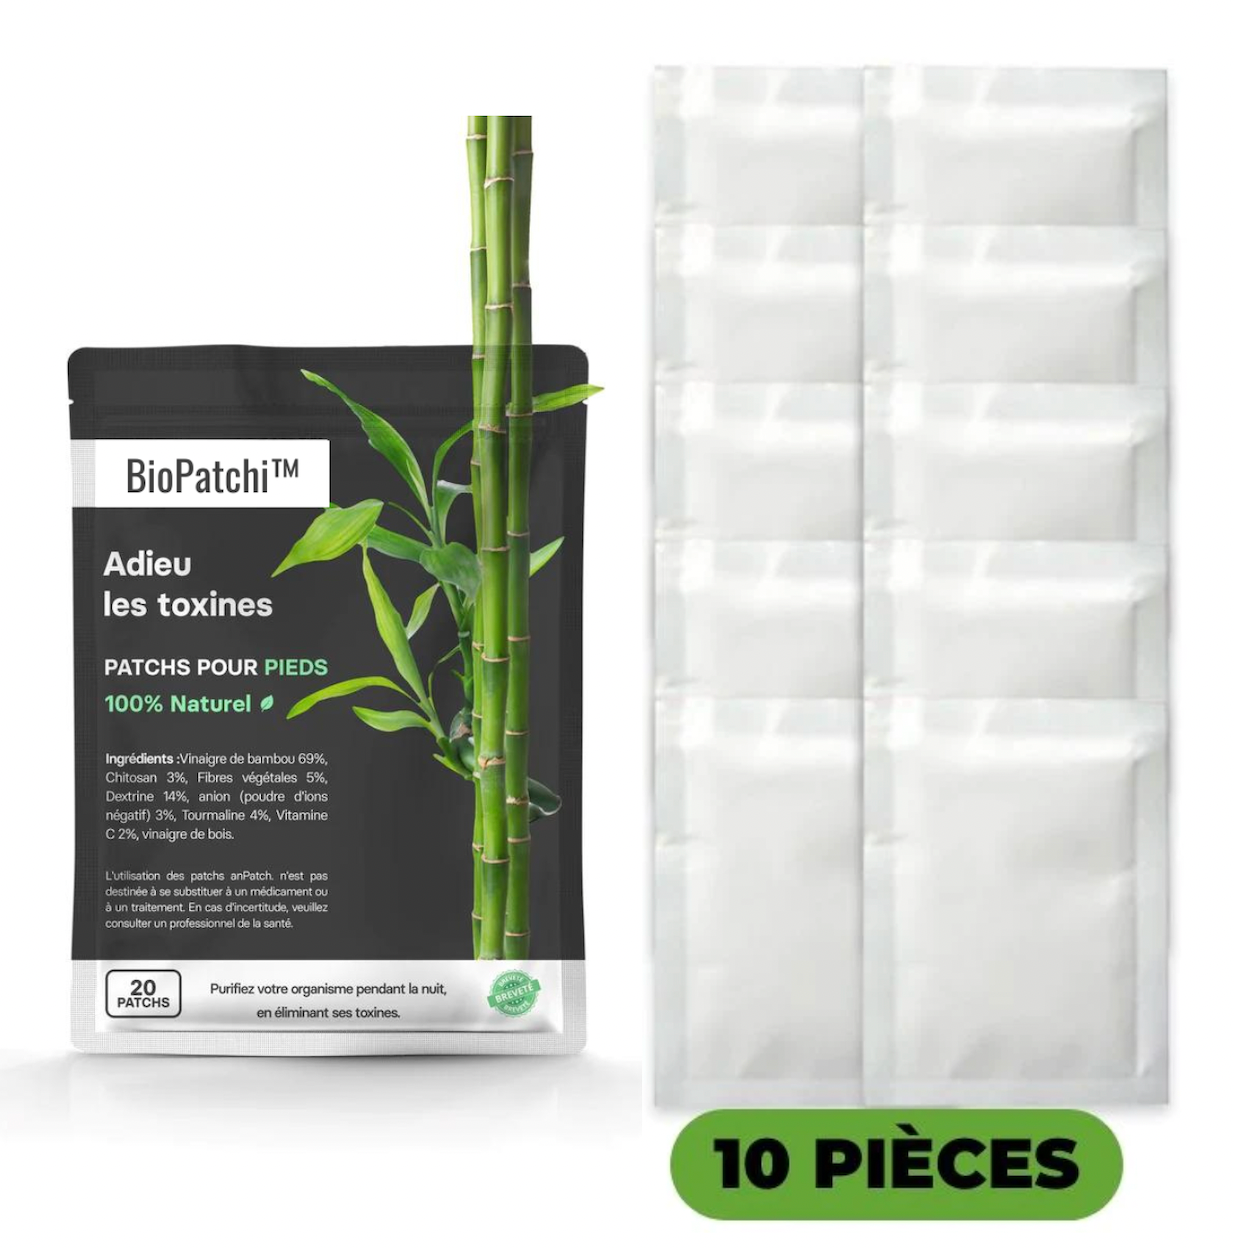 BioPatchi™ - Le Patch Detox 100% NATUREL